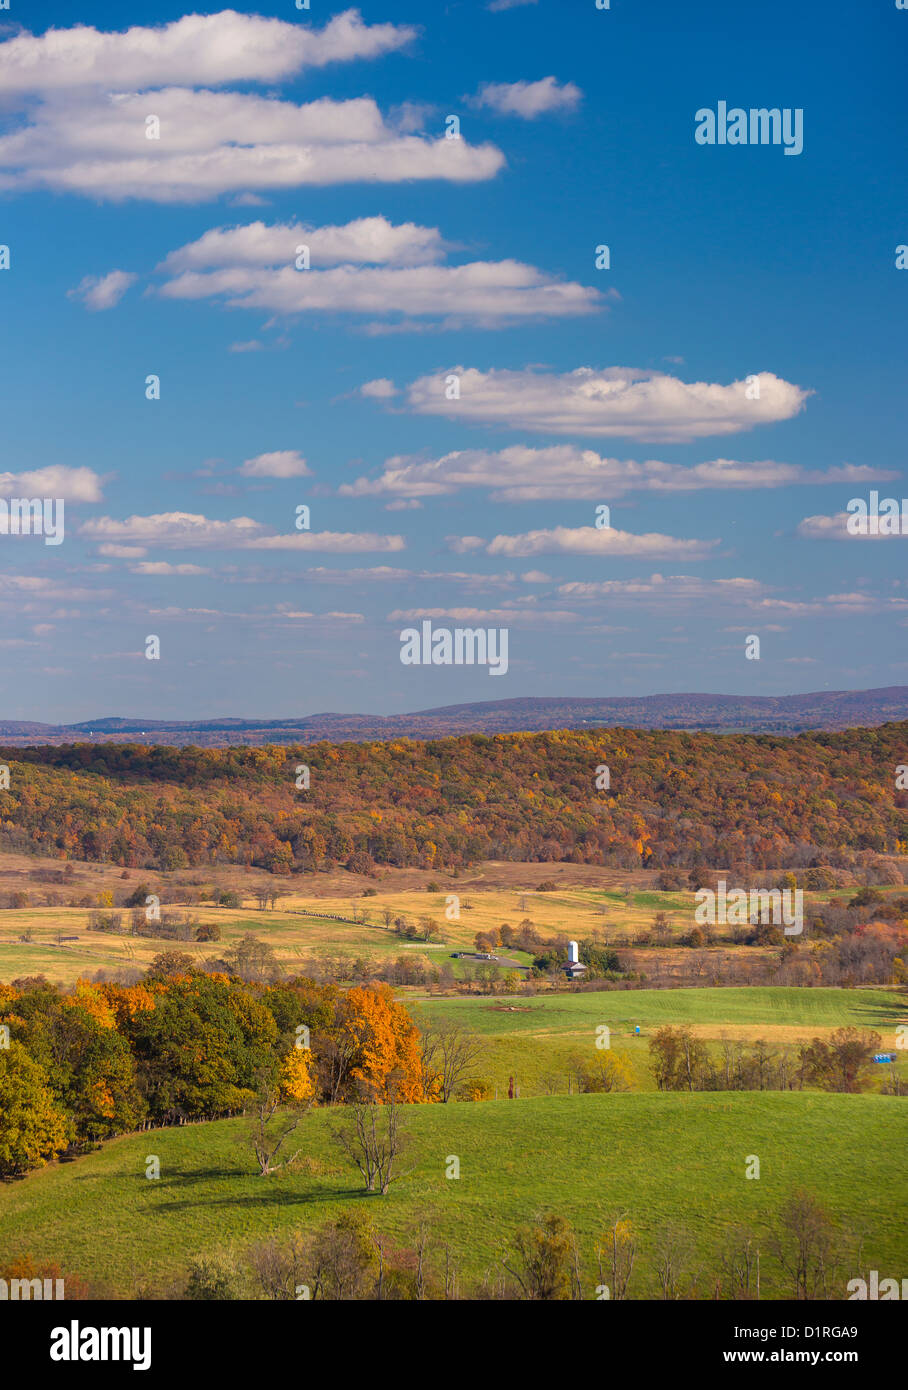 DELAPLANE, VIRGINIA, USA - Herbst-Landschaft vom Himmel Wiesen State Park zu sehen. Stockfoto